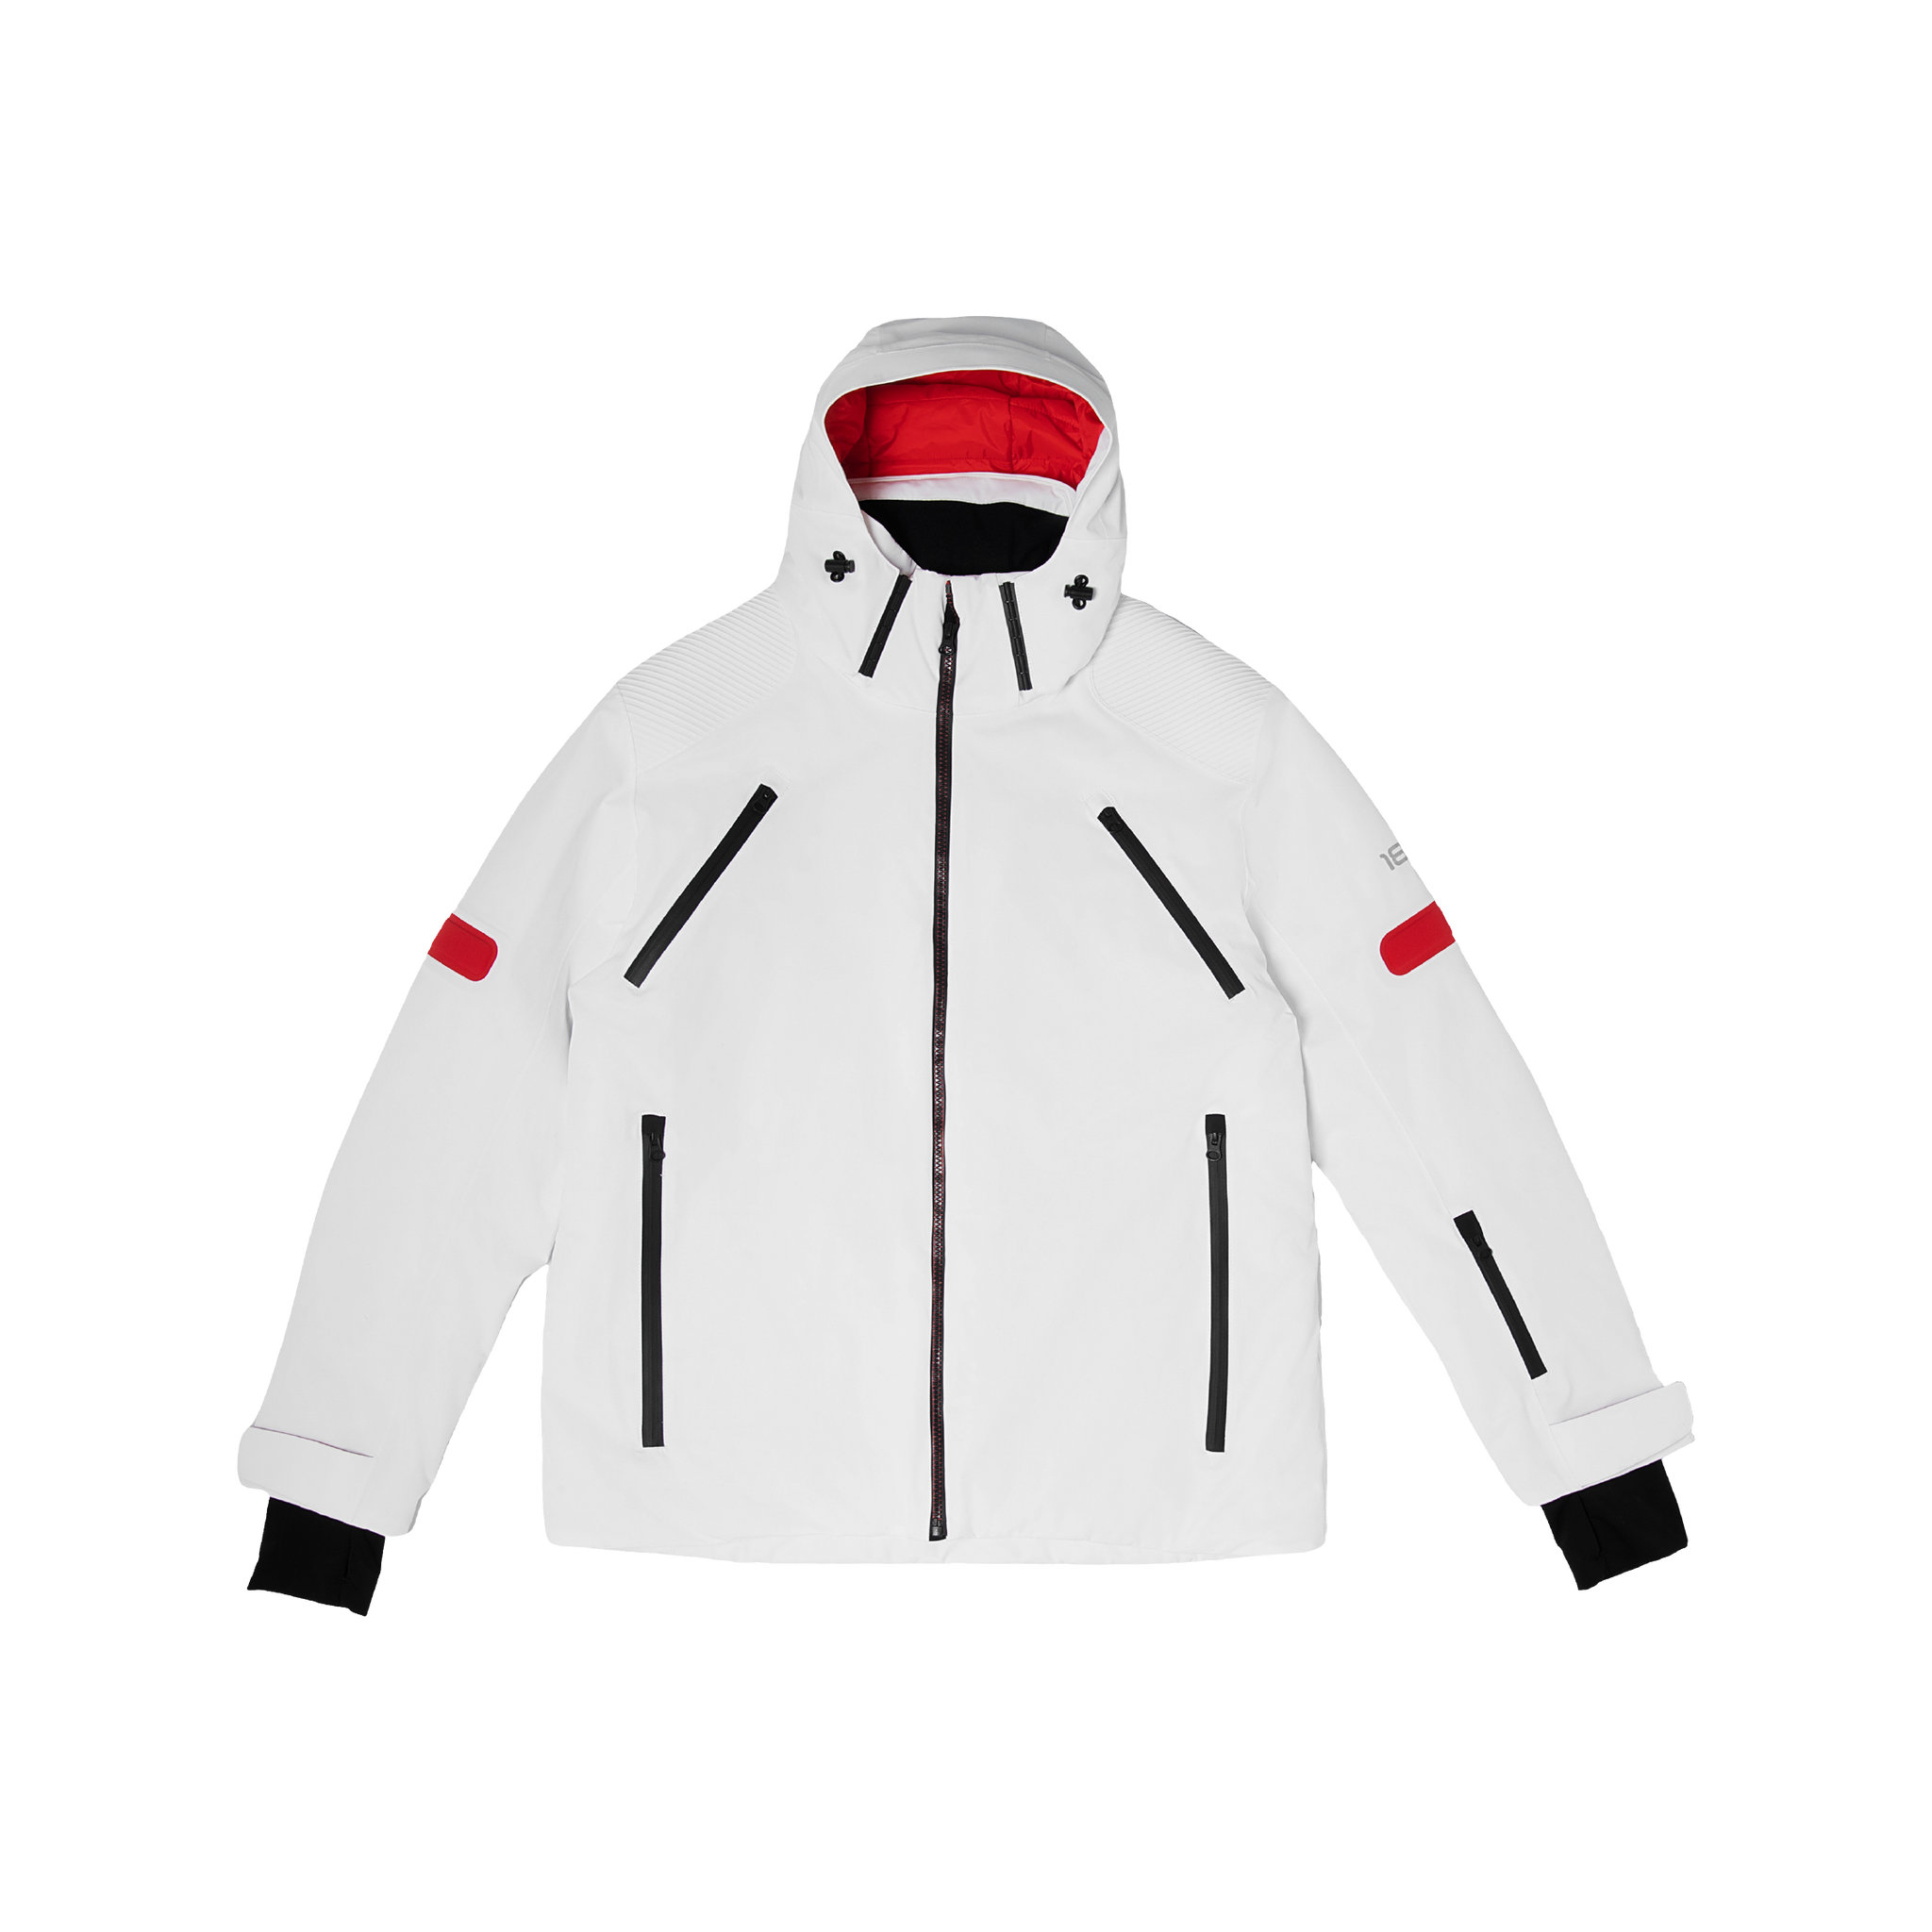 Veste de ski en blanc et rouge - Blanc